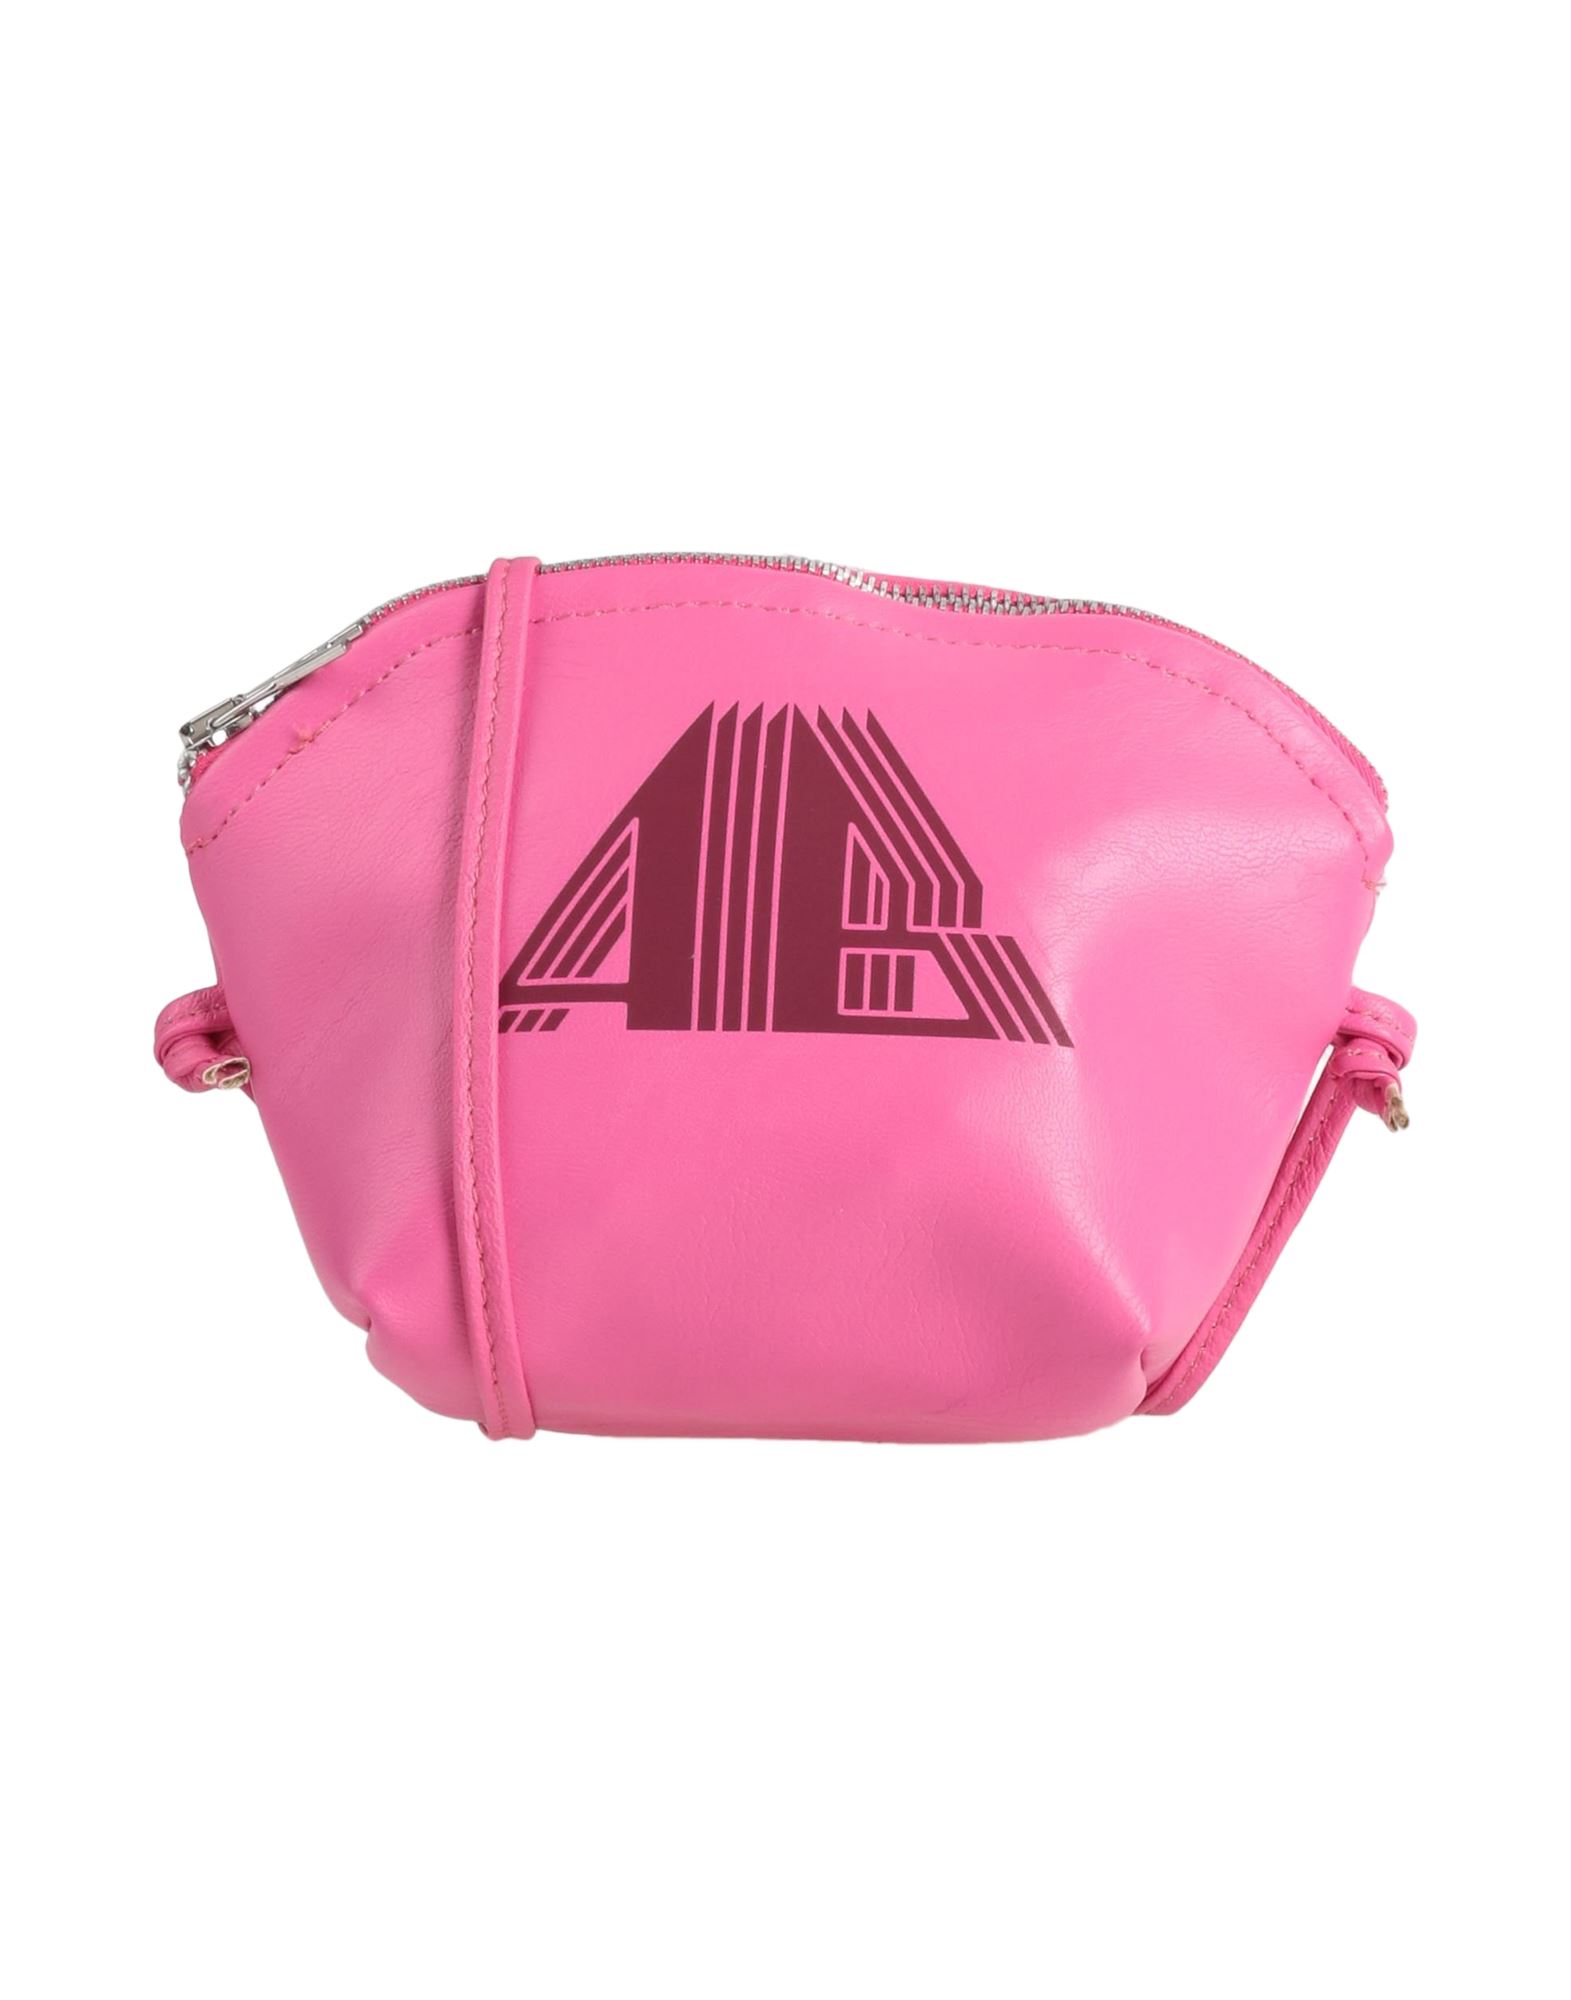 Aniye By Handbags In Pink